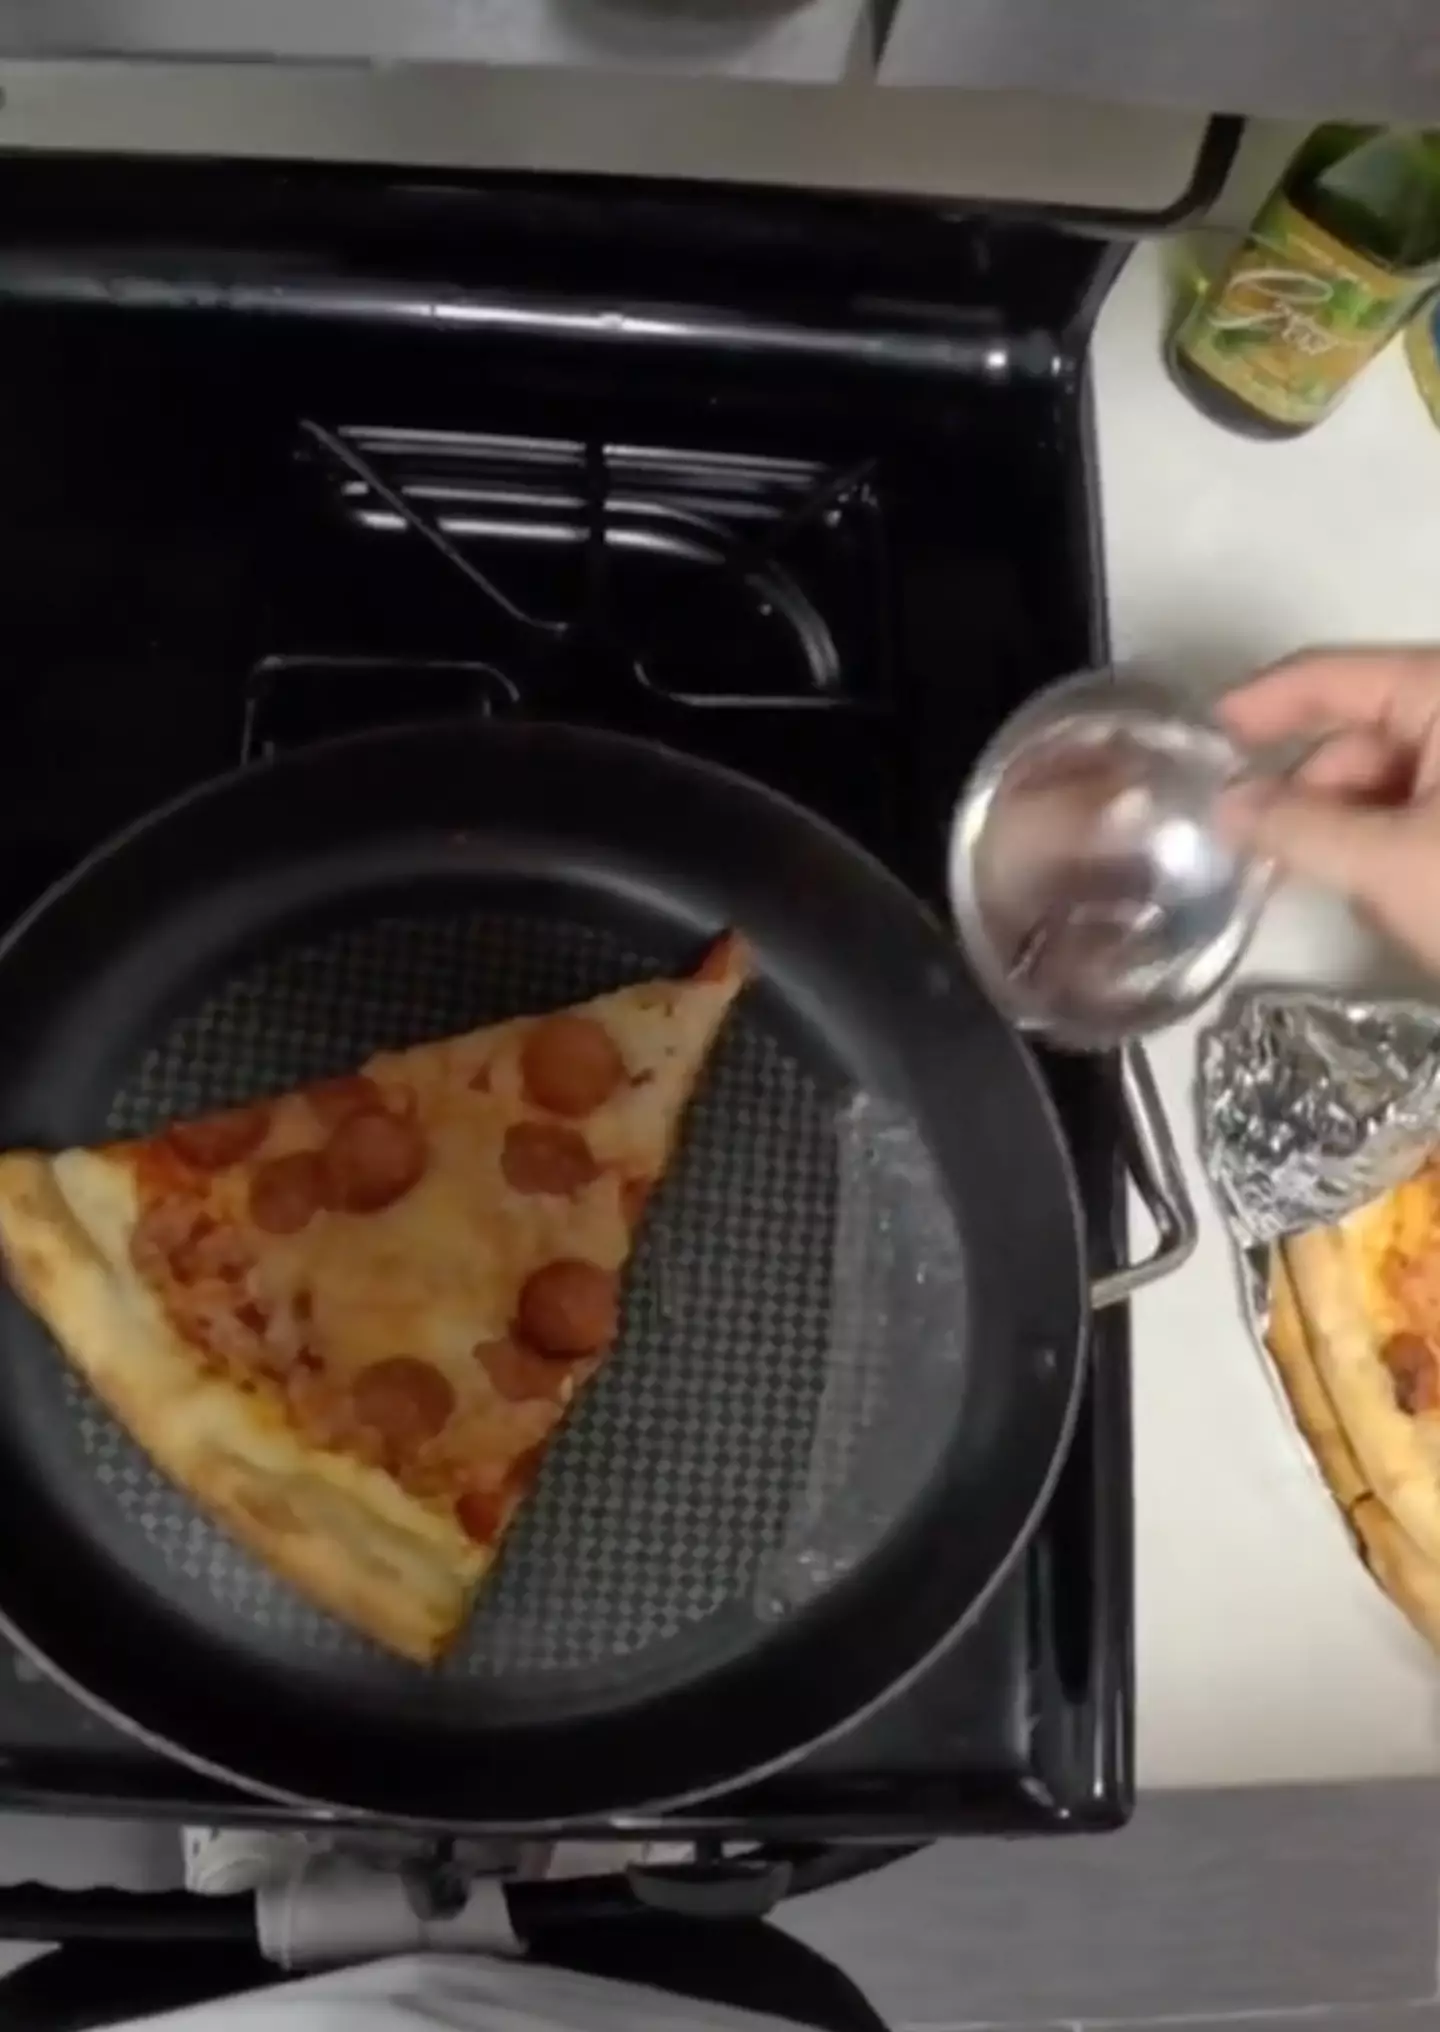 The method involves using a frying pan. (TikTok/@dommelier)